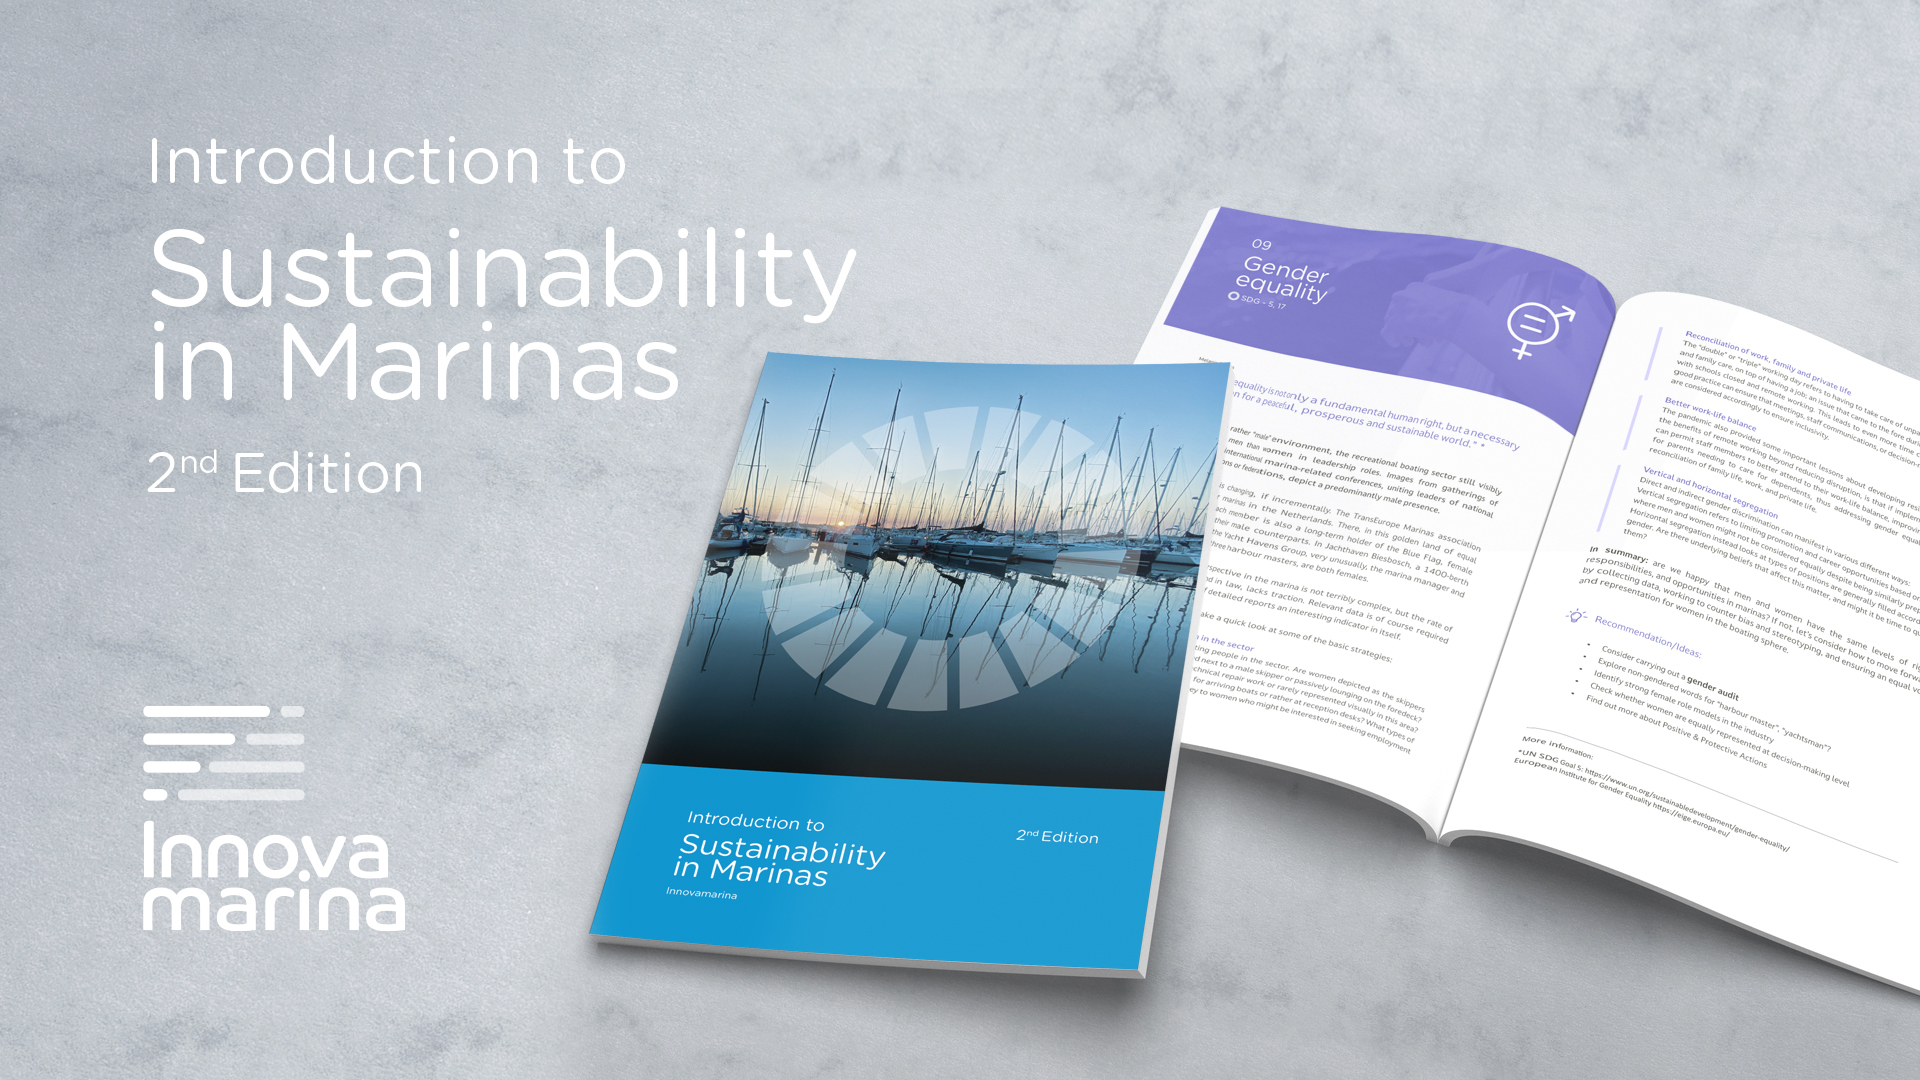 Una introducción a la sostenibilidad en marinas - 2ª edición